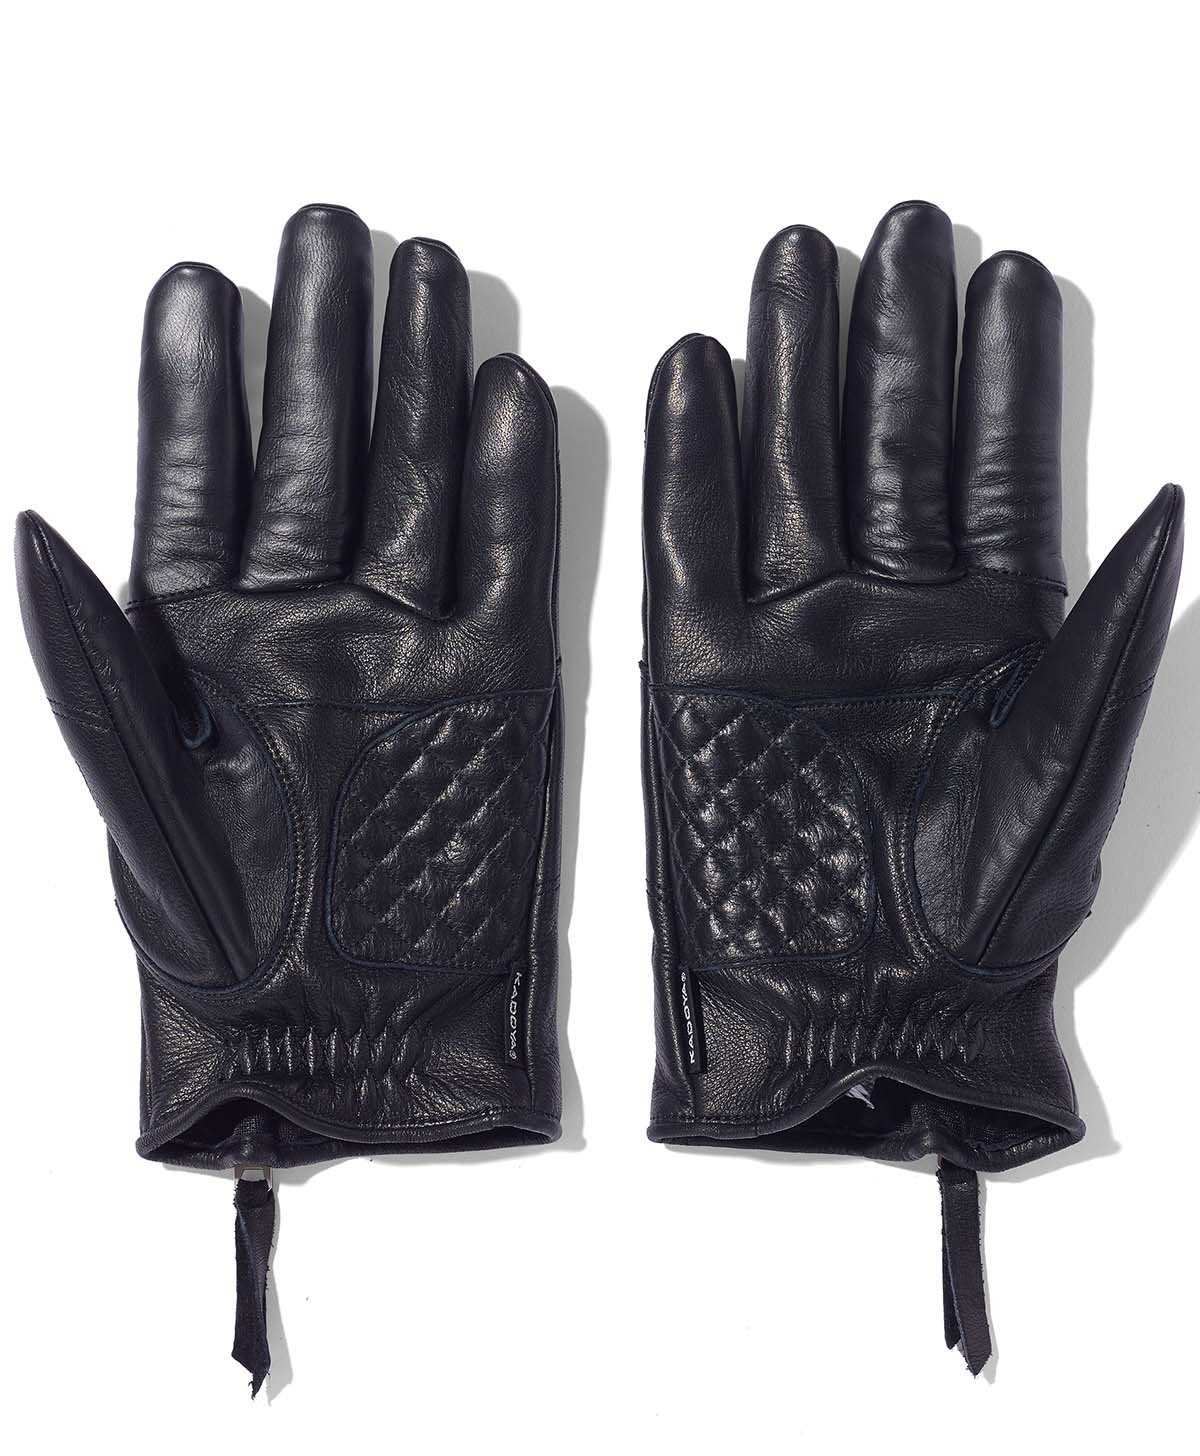 ROX Glove / Black (Women's)